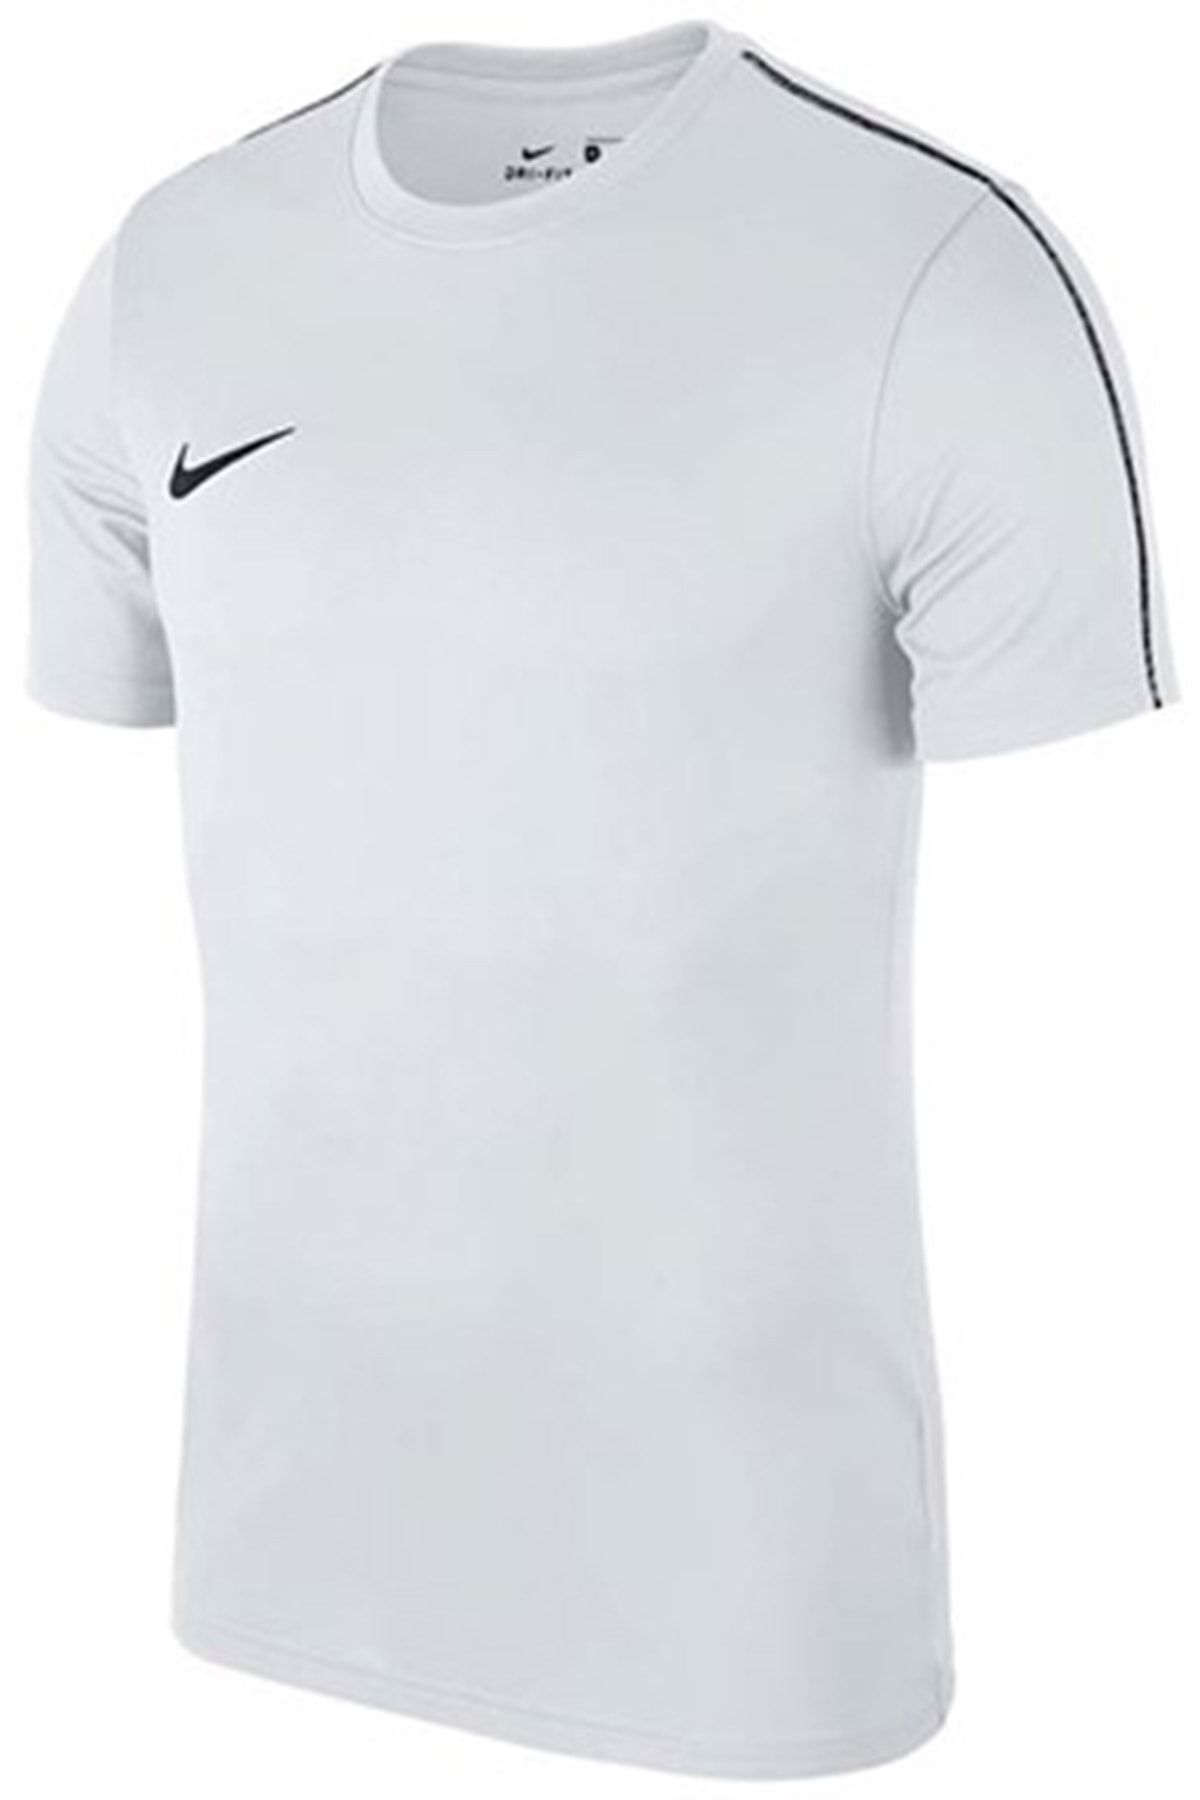 Nike Aa2046-100 Dry Park Ss Top Tişört